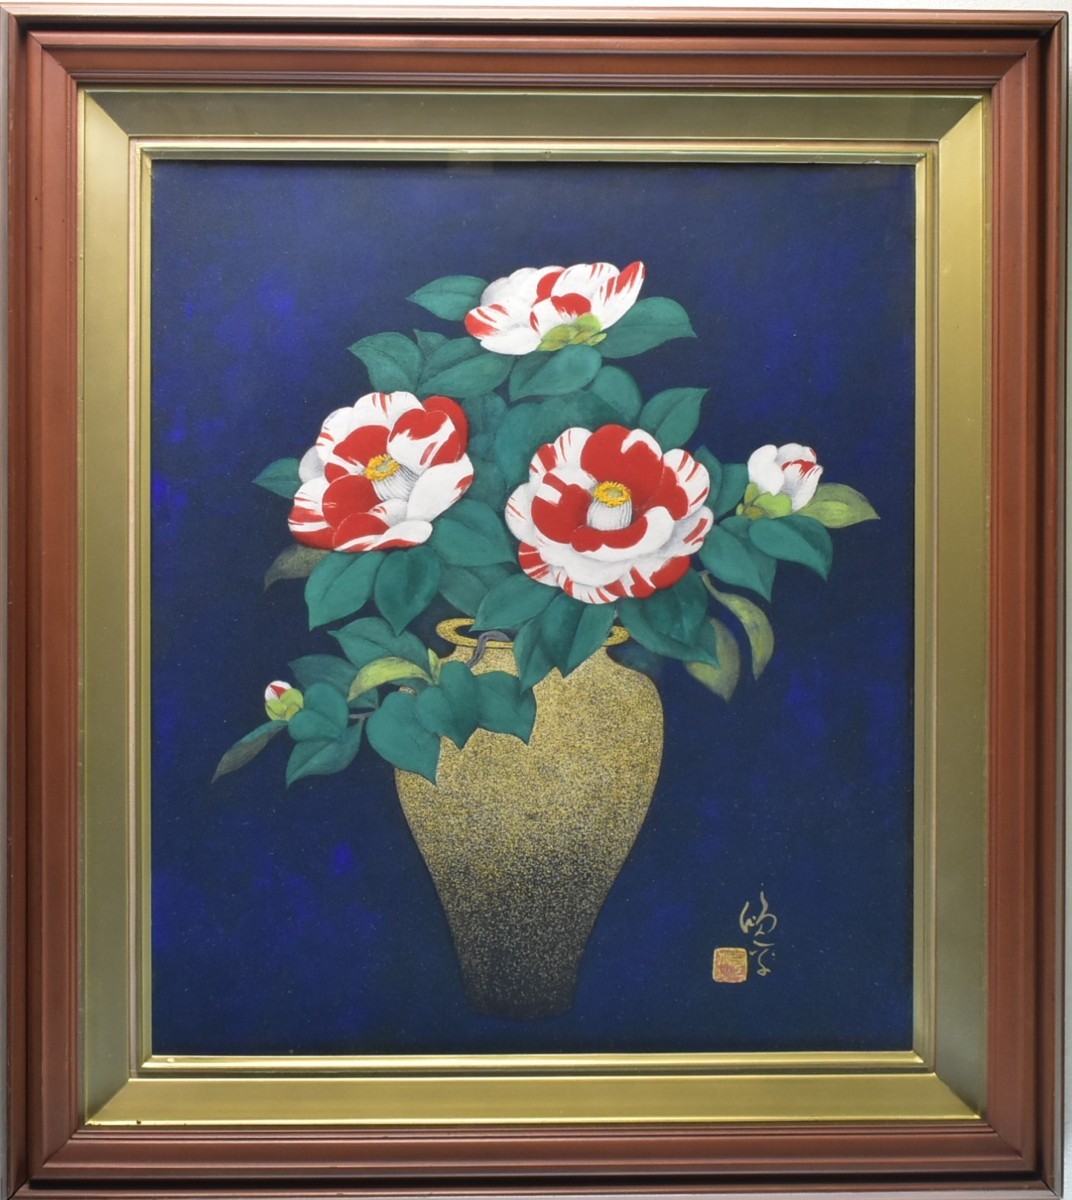 Oeuvre de peinture japonaise dénichée ! Artiste inconnu N°10 Galerie Kotobuki Tsubaki Masamitsu, peinture, Peinture japonaise, fleurs et oiseaux, oiseaux et bêtes